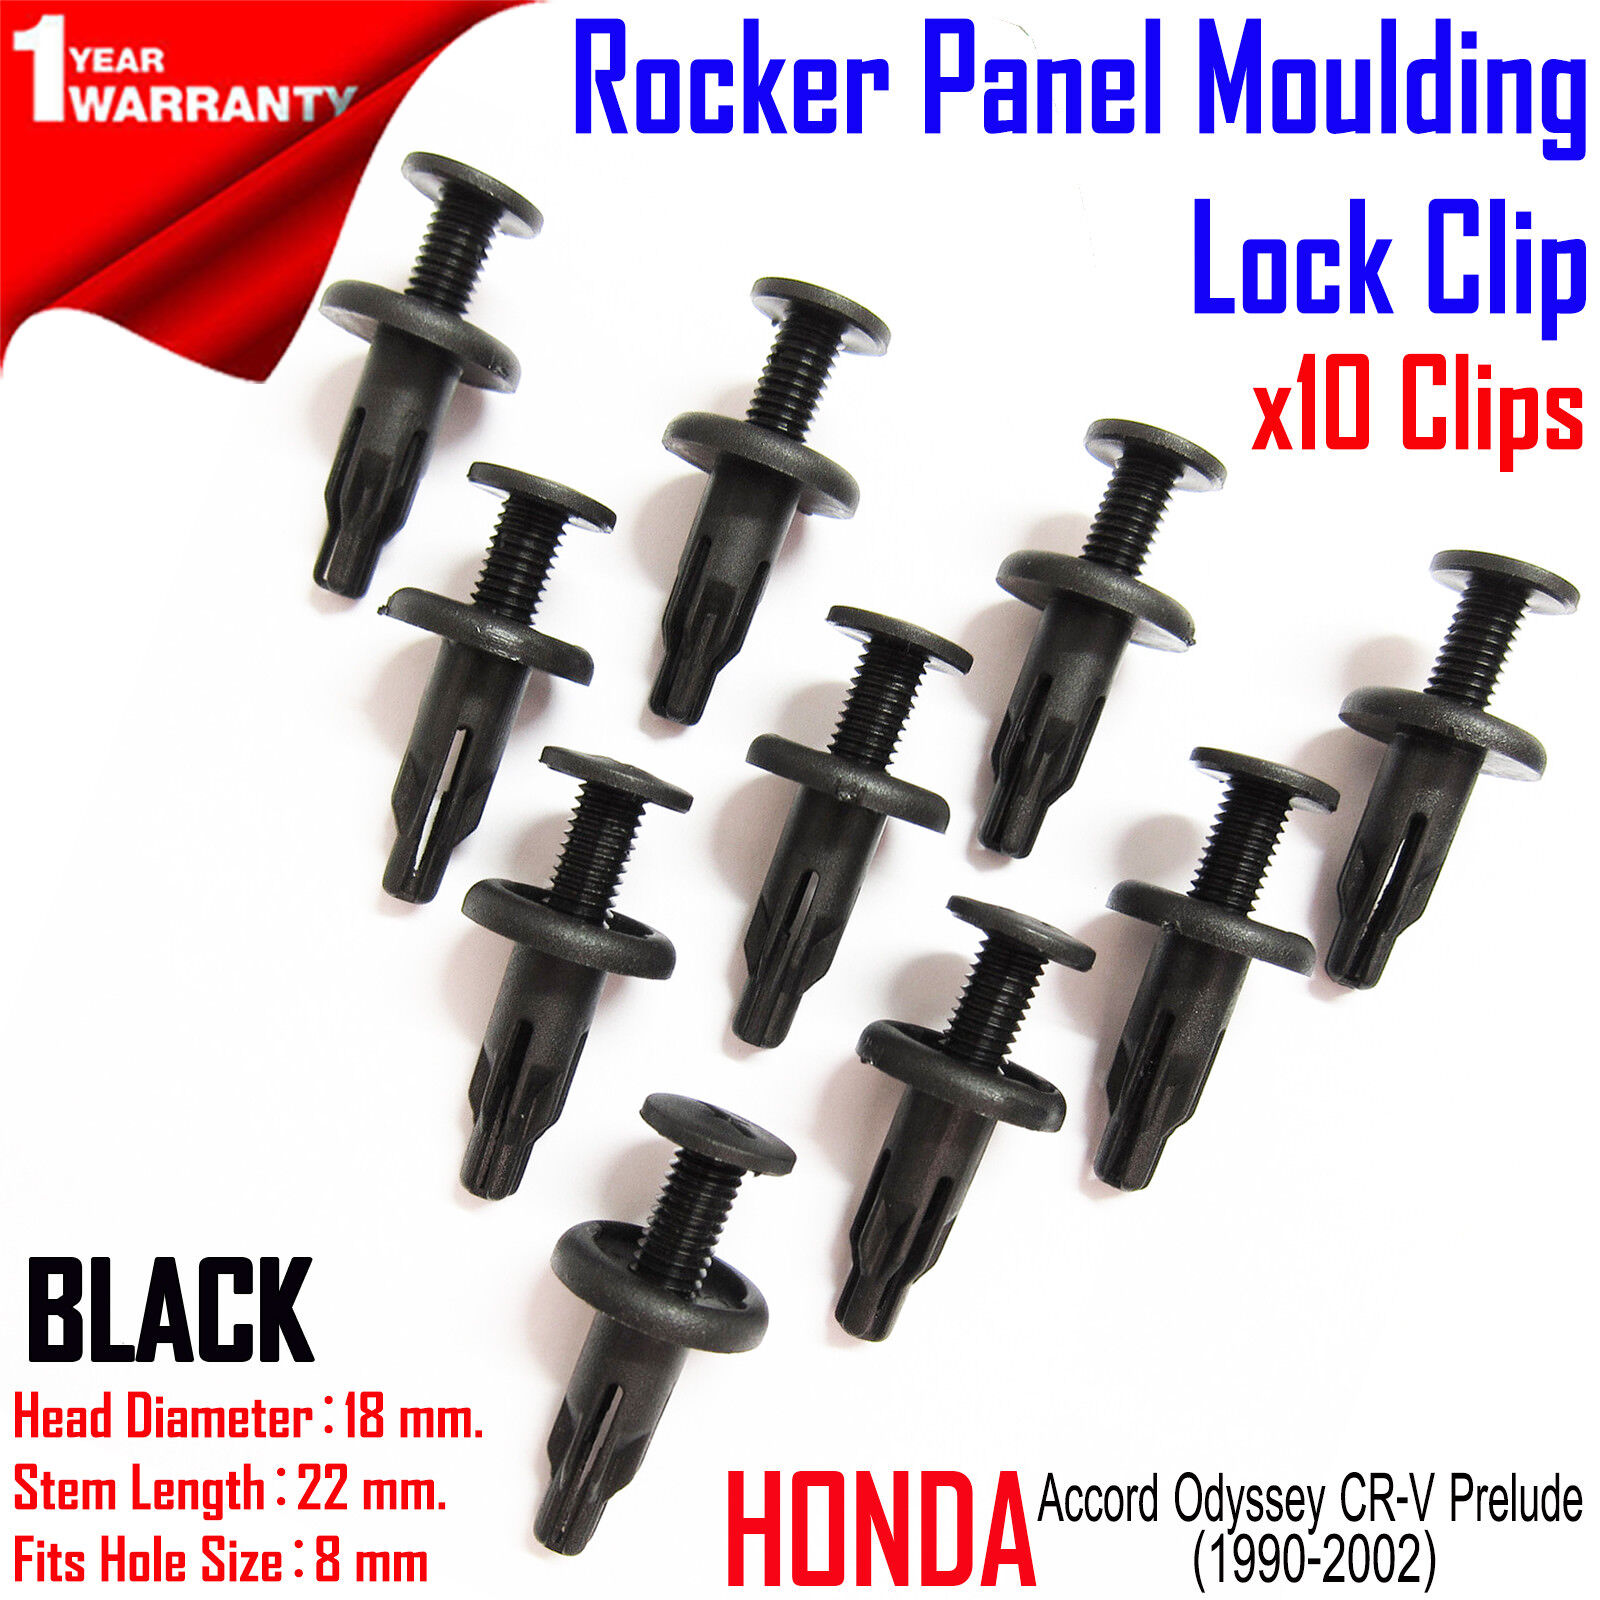 Honda Accord Odyssey CR-V Prelude Rocker Panel Moulding Lock Clip 10x